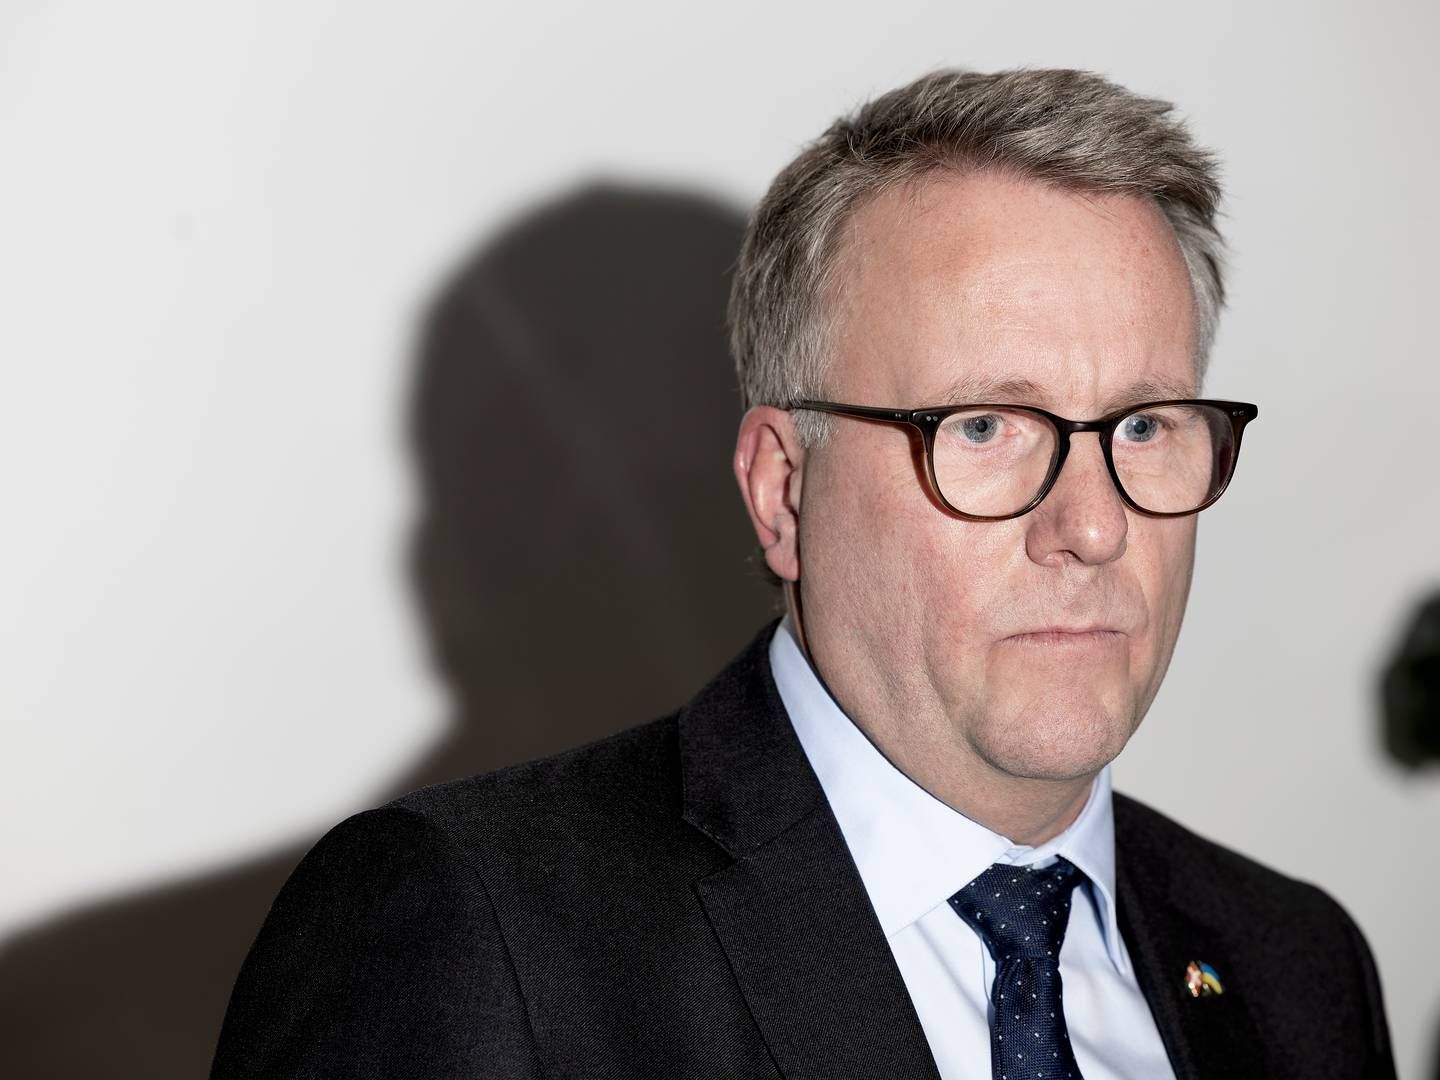 Erhvervsminister Morten Bødskov (S) har ikke fulgt indstilling om kapitalkrav til ejendomsudlån fra Det Systemiske Risikoråd helt til dørs. | Foto: Thomas Borberg